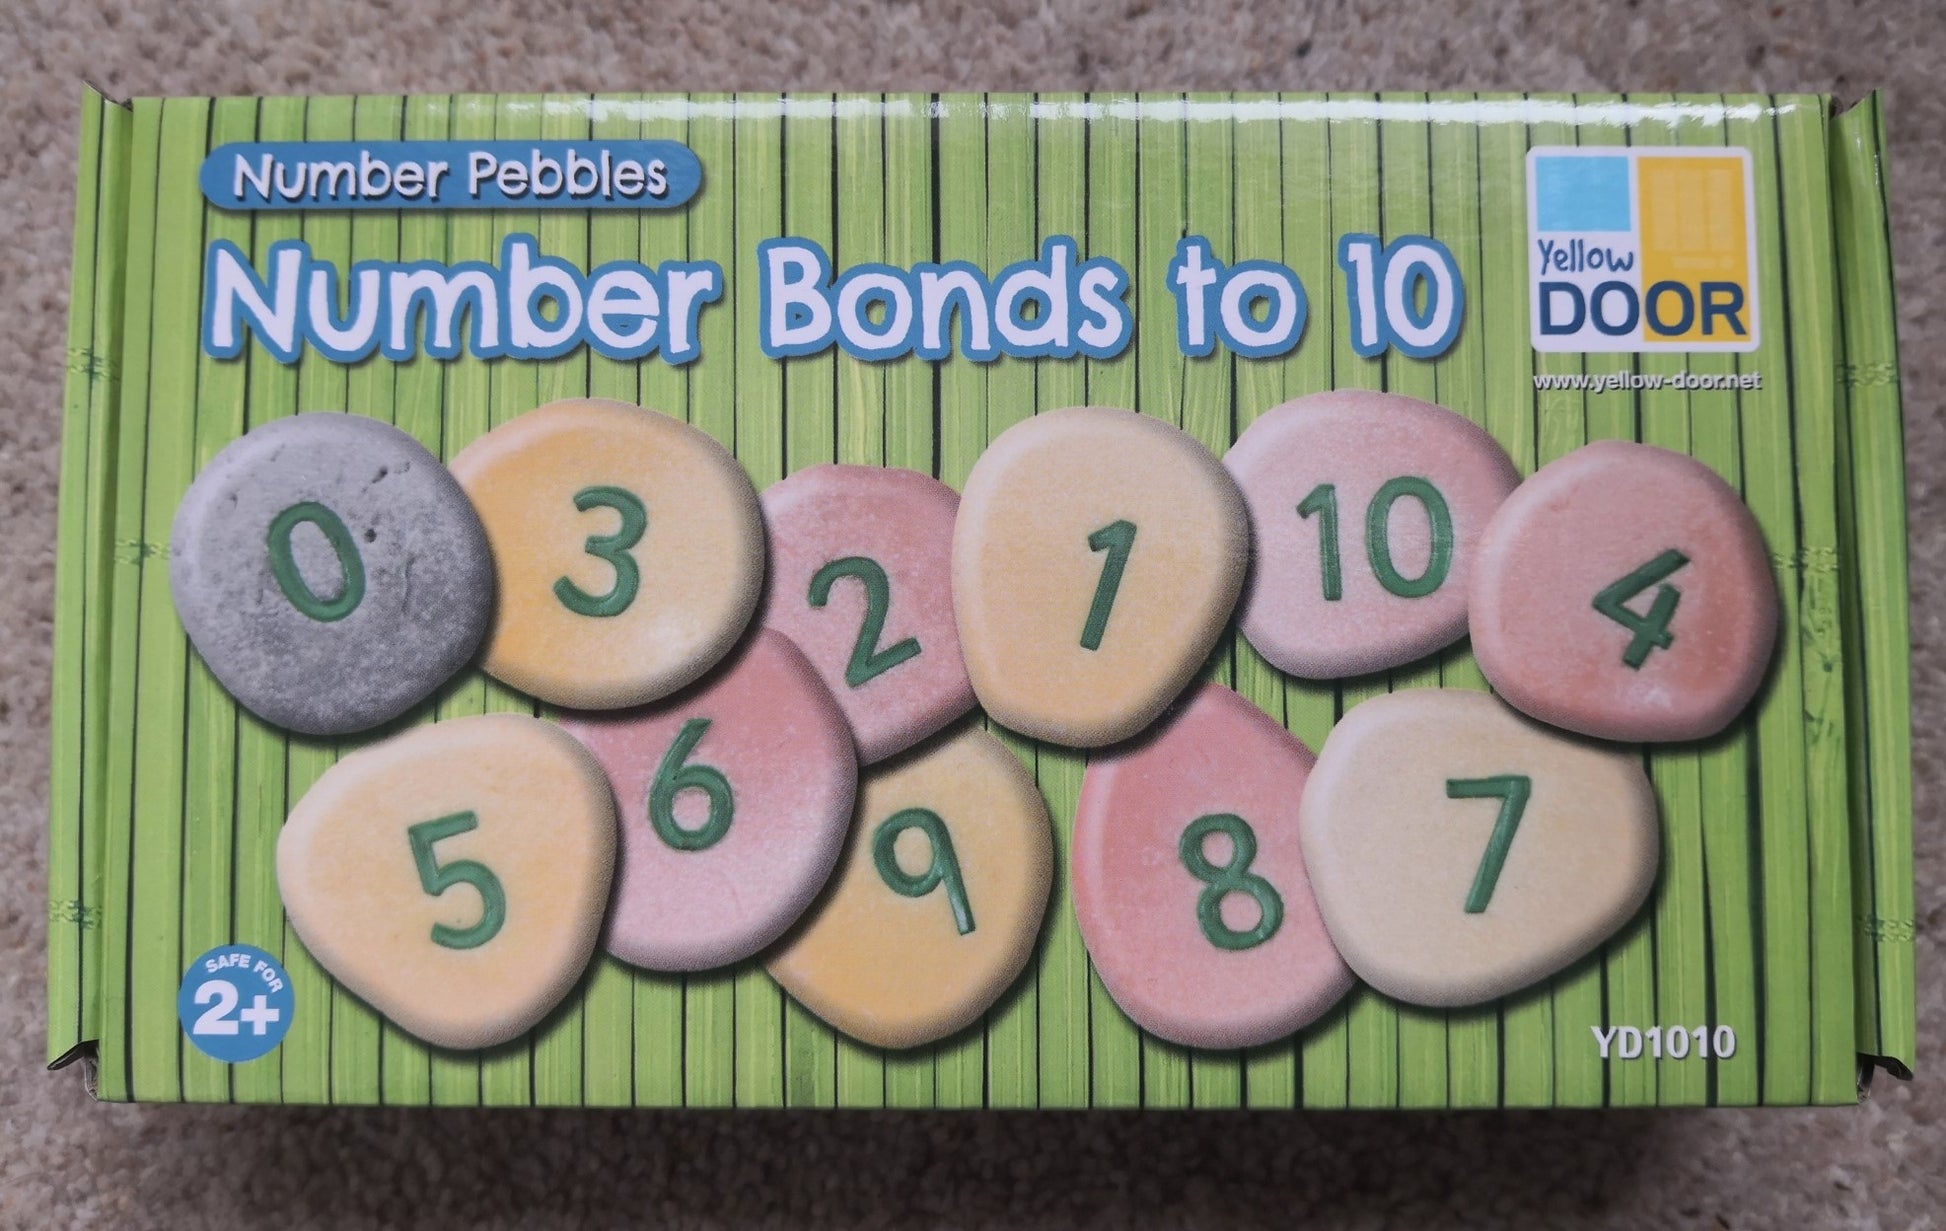 number pebbles - number bonds yellow door